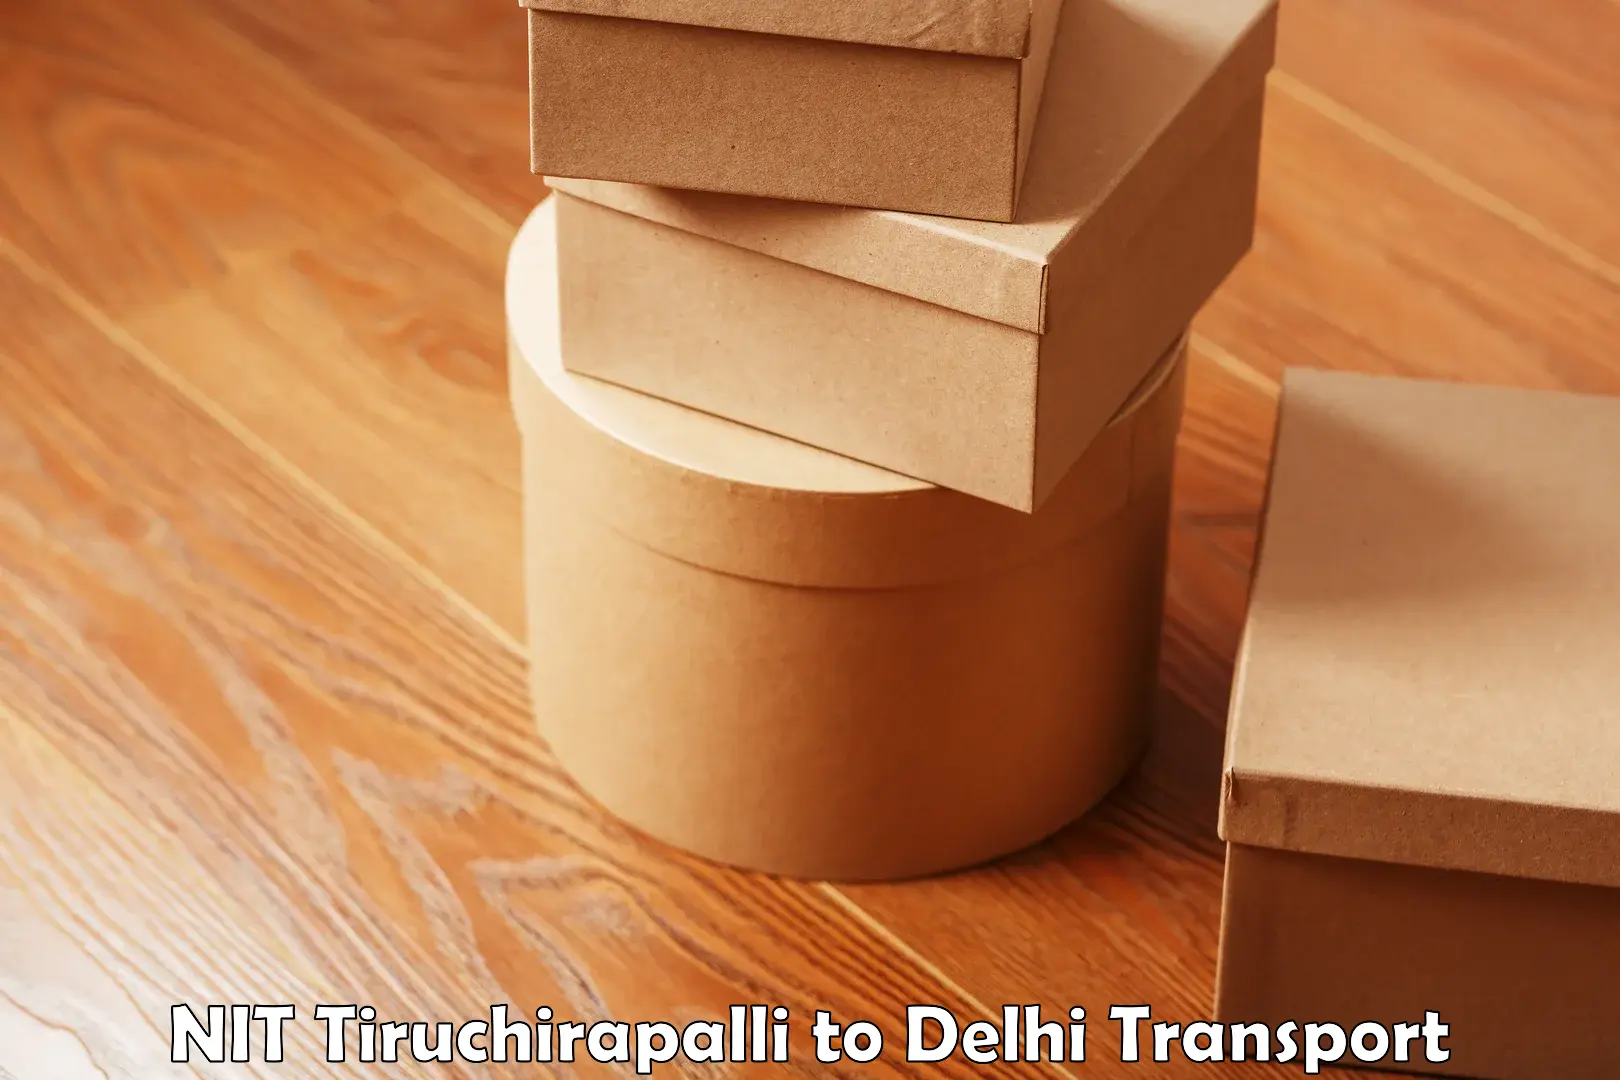 Delivery service NIT Tiruchirapalli to Jawaharlal Nehru University New Delhi